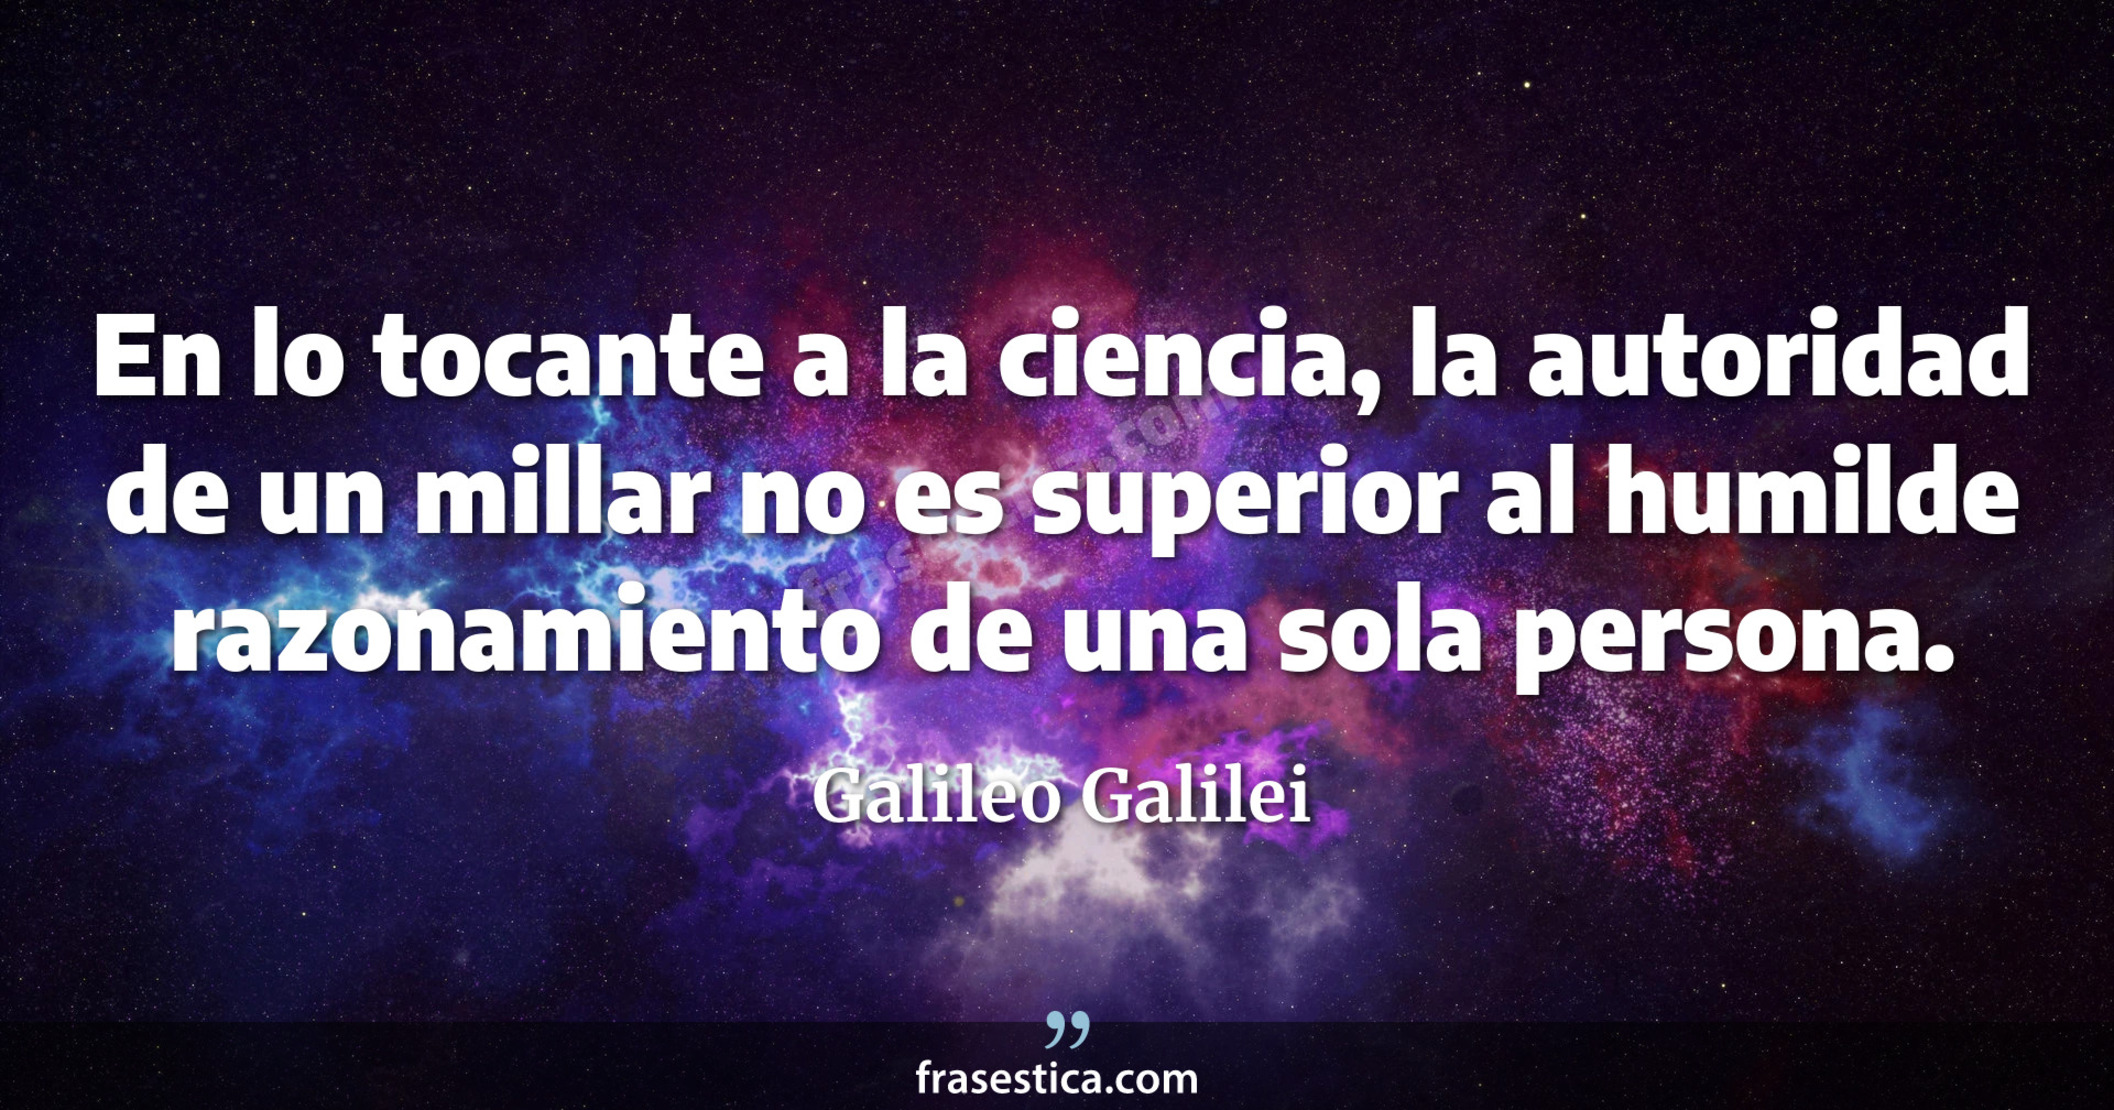 En lo tocante a la ciencia, la autoridad de un millar no es superior al humilde razonamiento de una sola persona. - Galileo Galilei